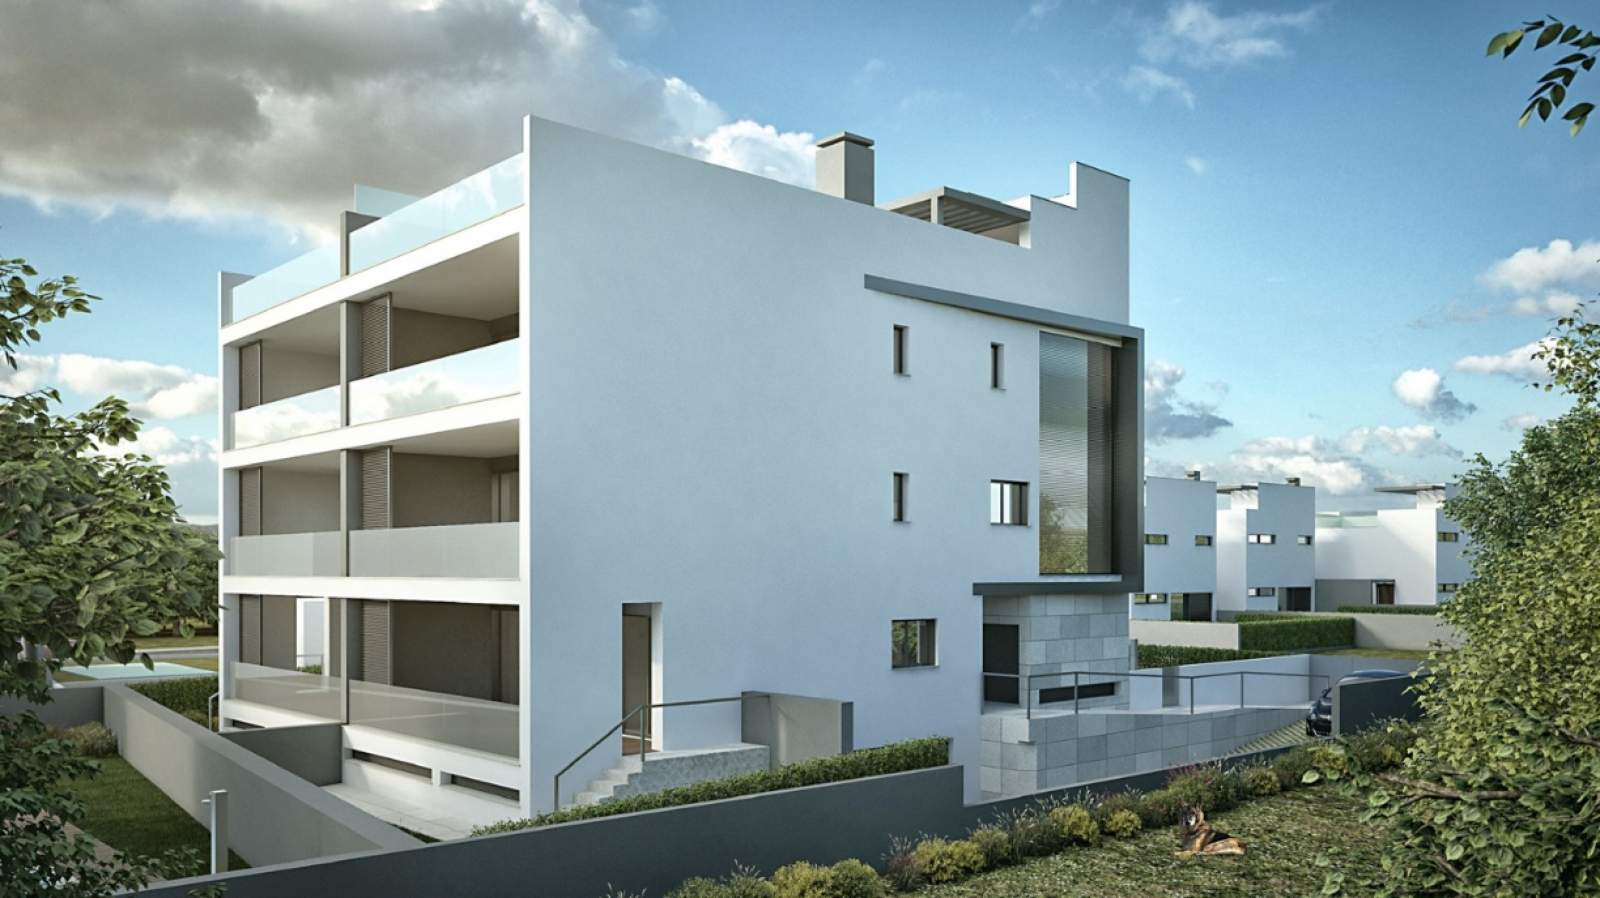 Venda de apartamento com vista mar, Tavira, Algarve_138737